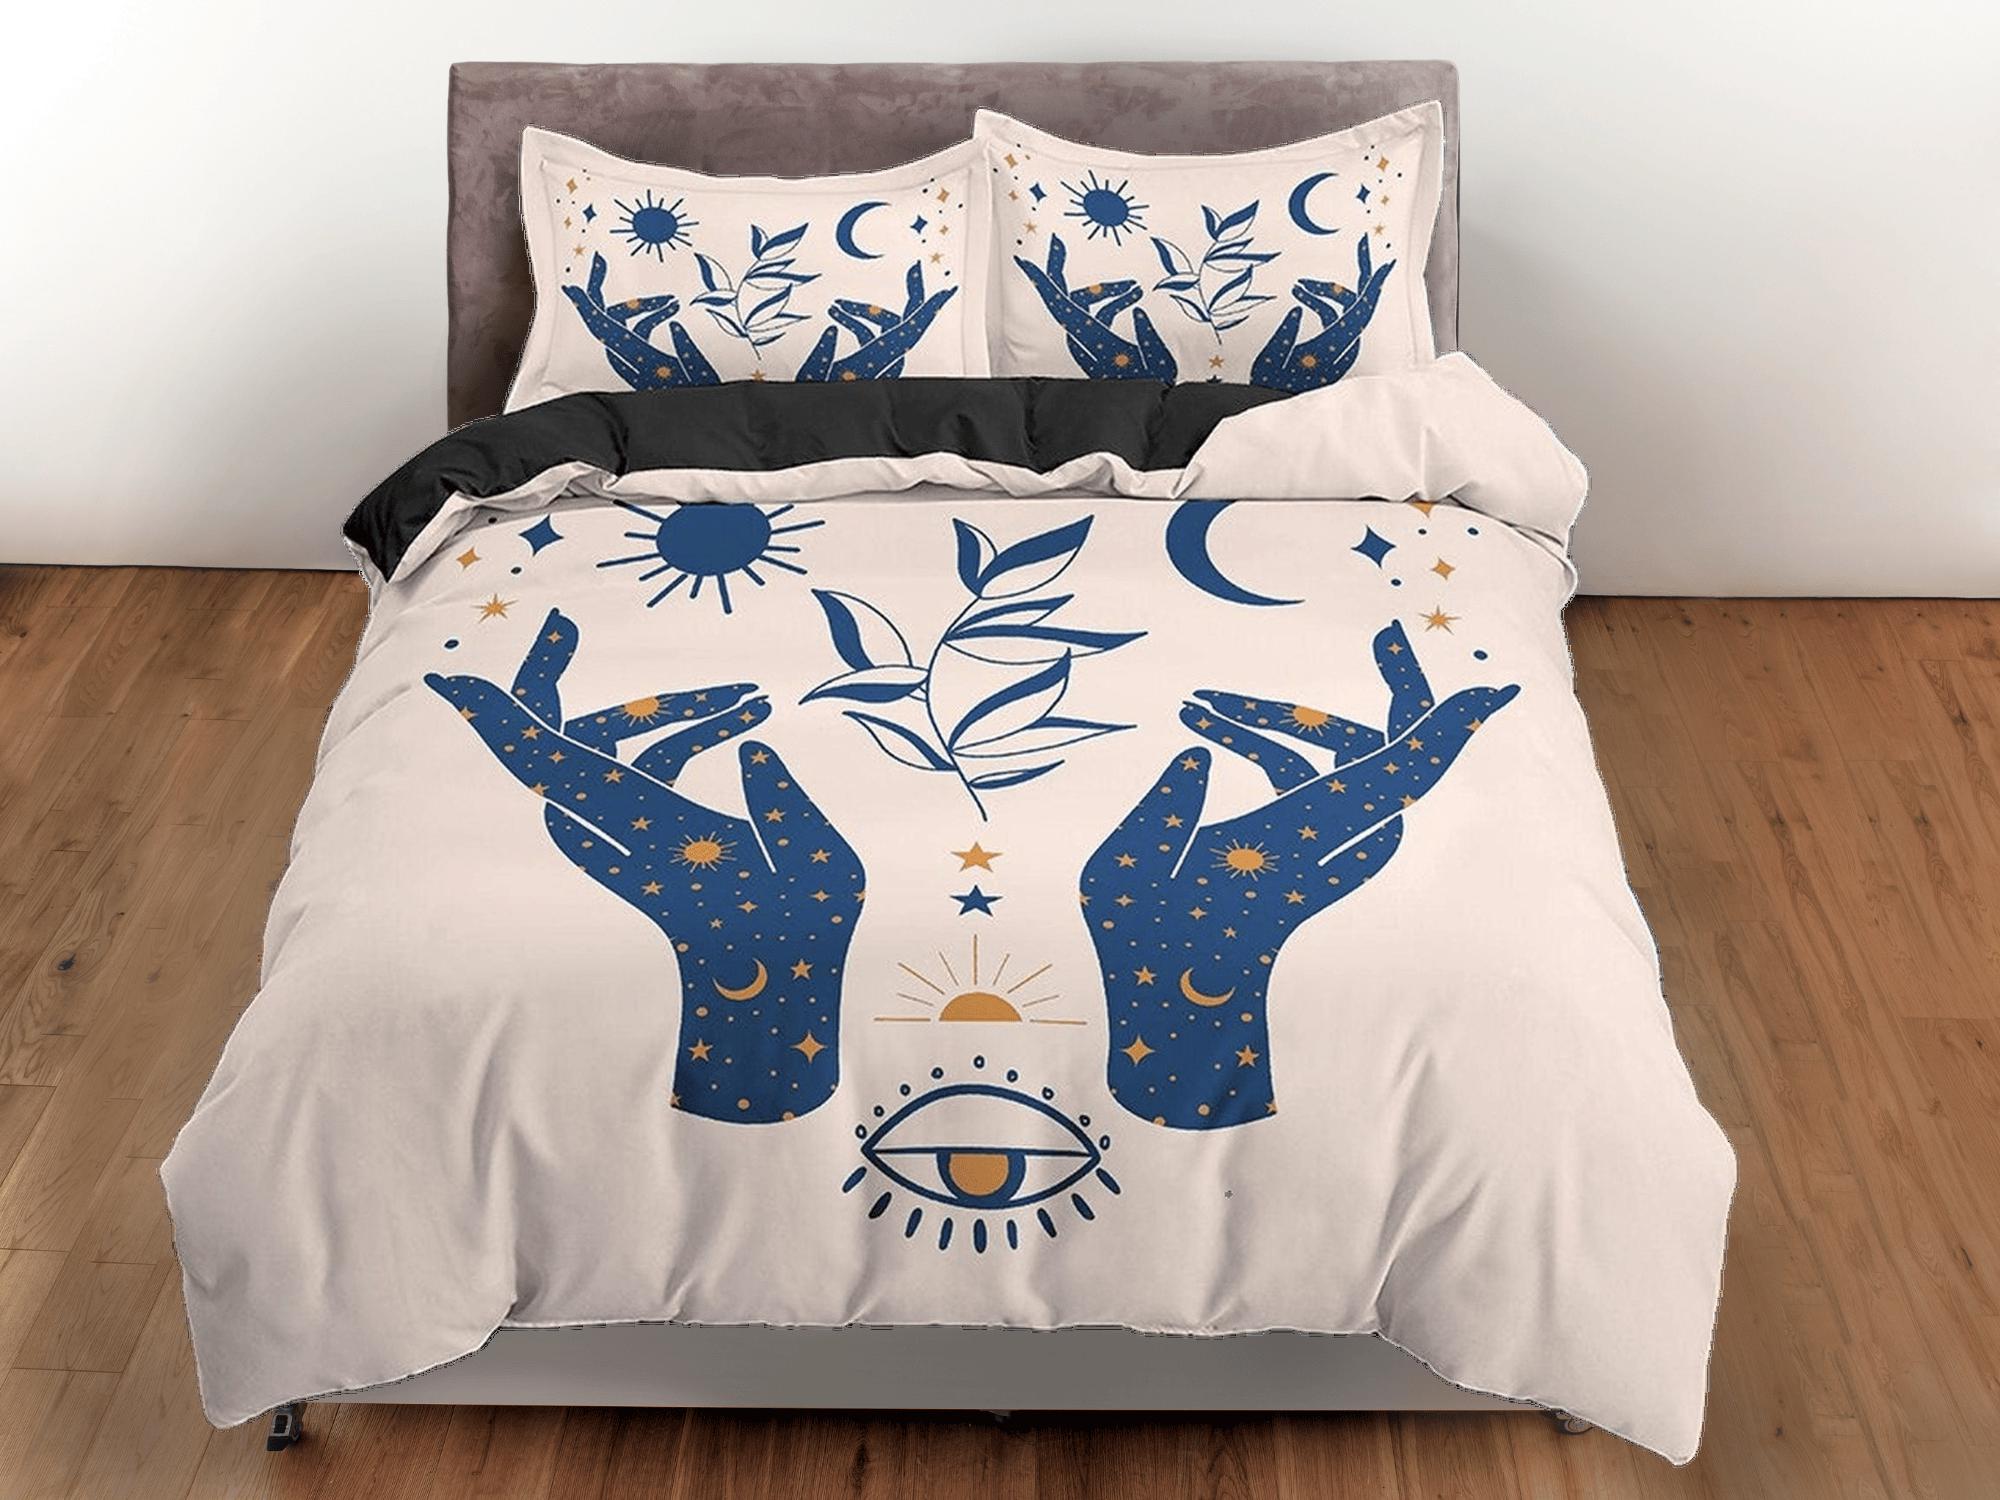 daintyduvet Beige Boho Bedding with Celestial Art Design in Blue, Gothic Duvet Cover Set, Witchy Dorm Bedding, Aesthetic Duvet King Queen Full Twin